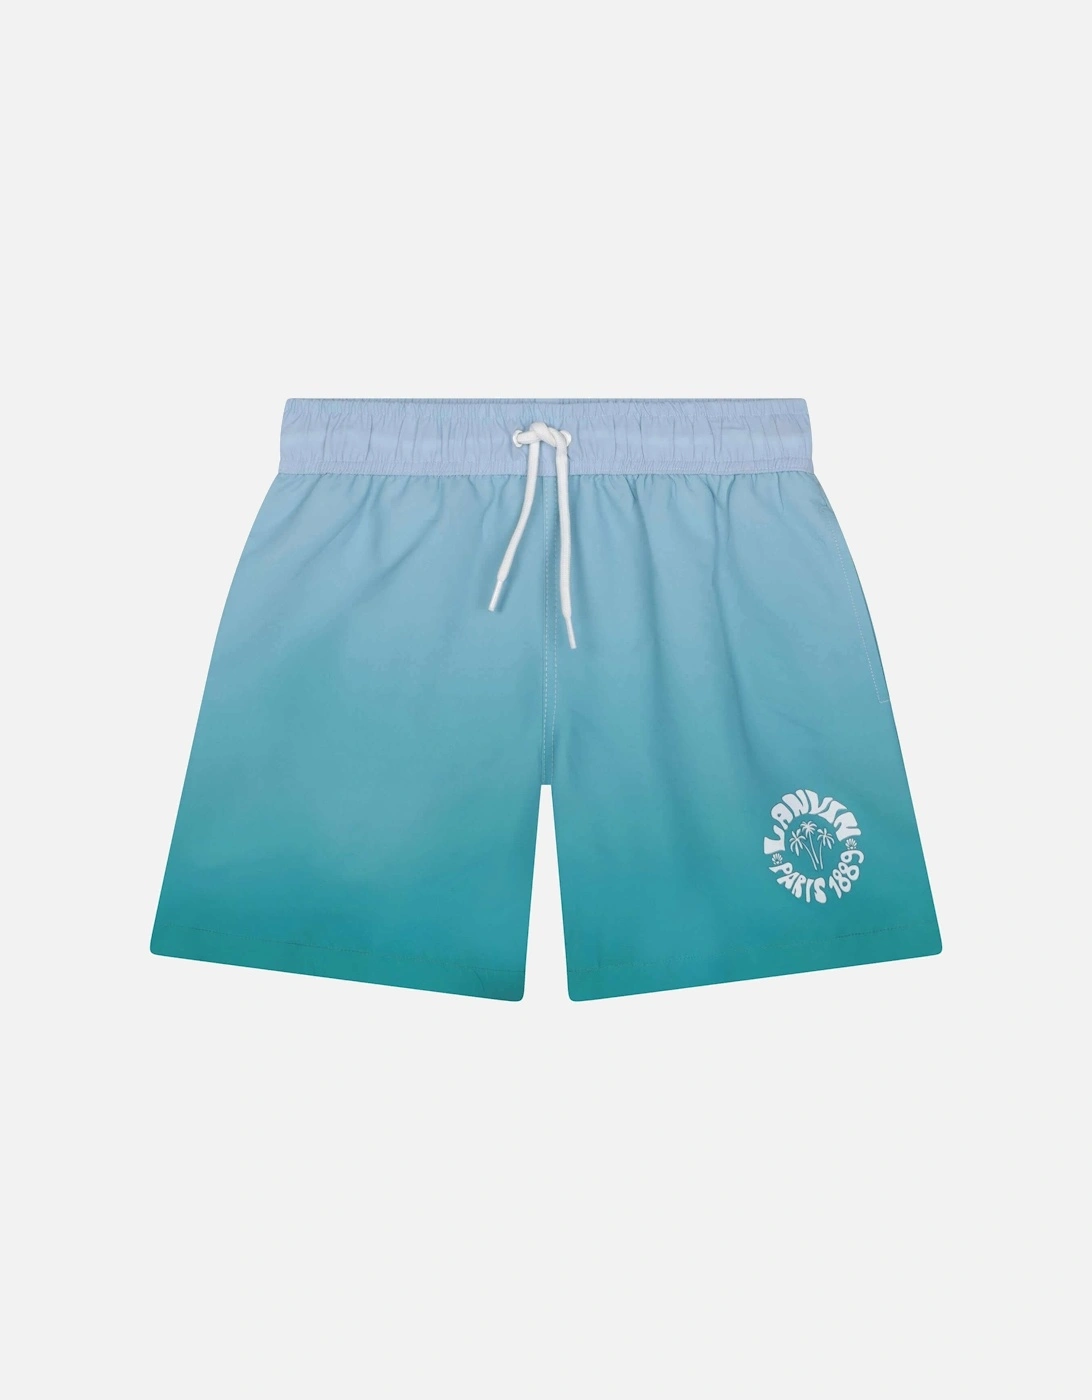 Boys Turquoise Waves Swim Shorts, 4 of 3